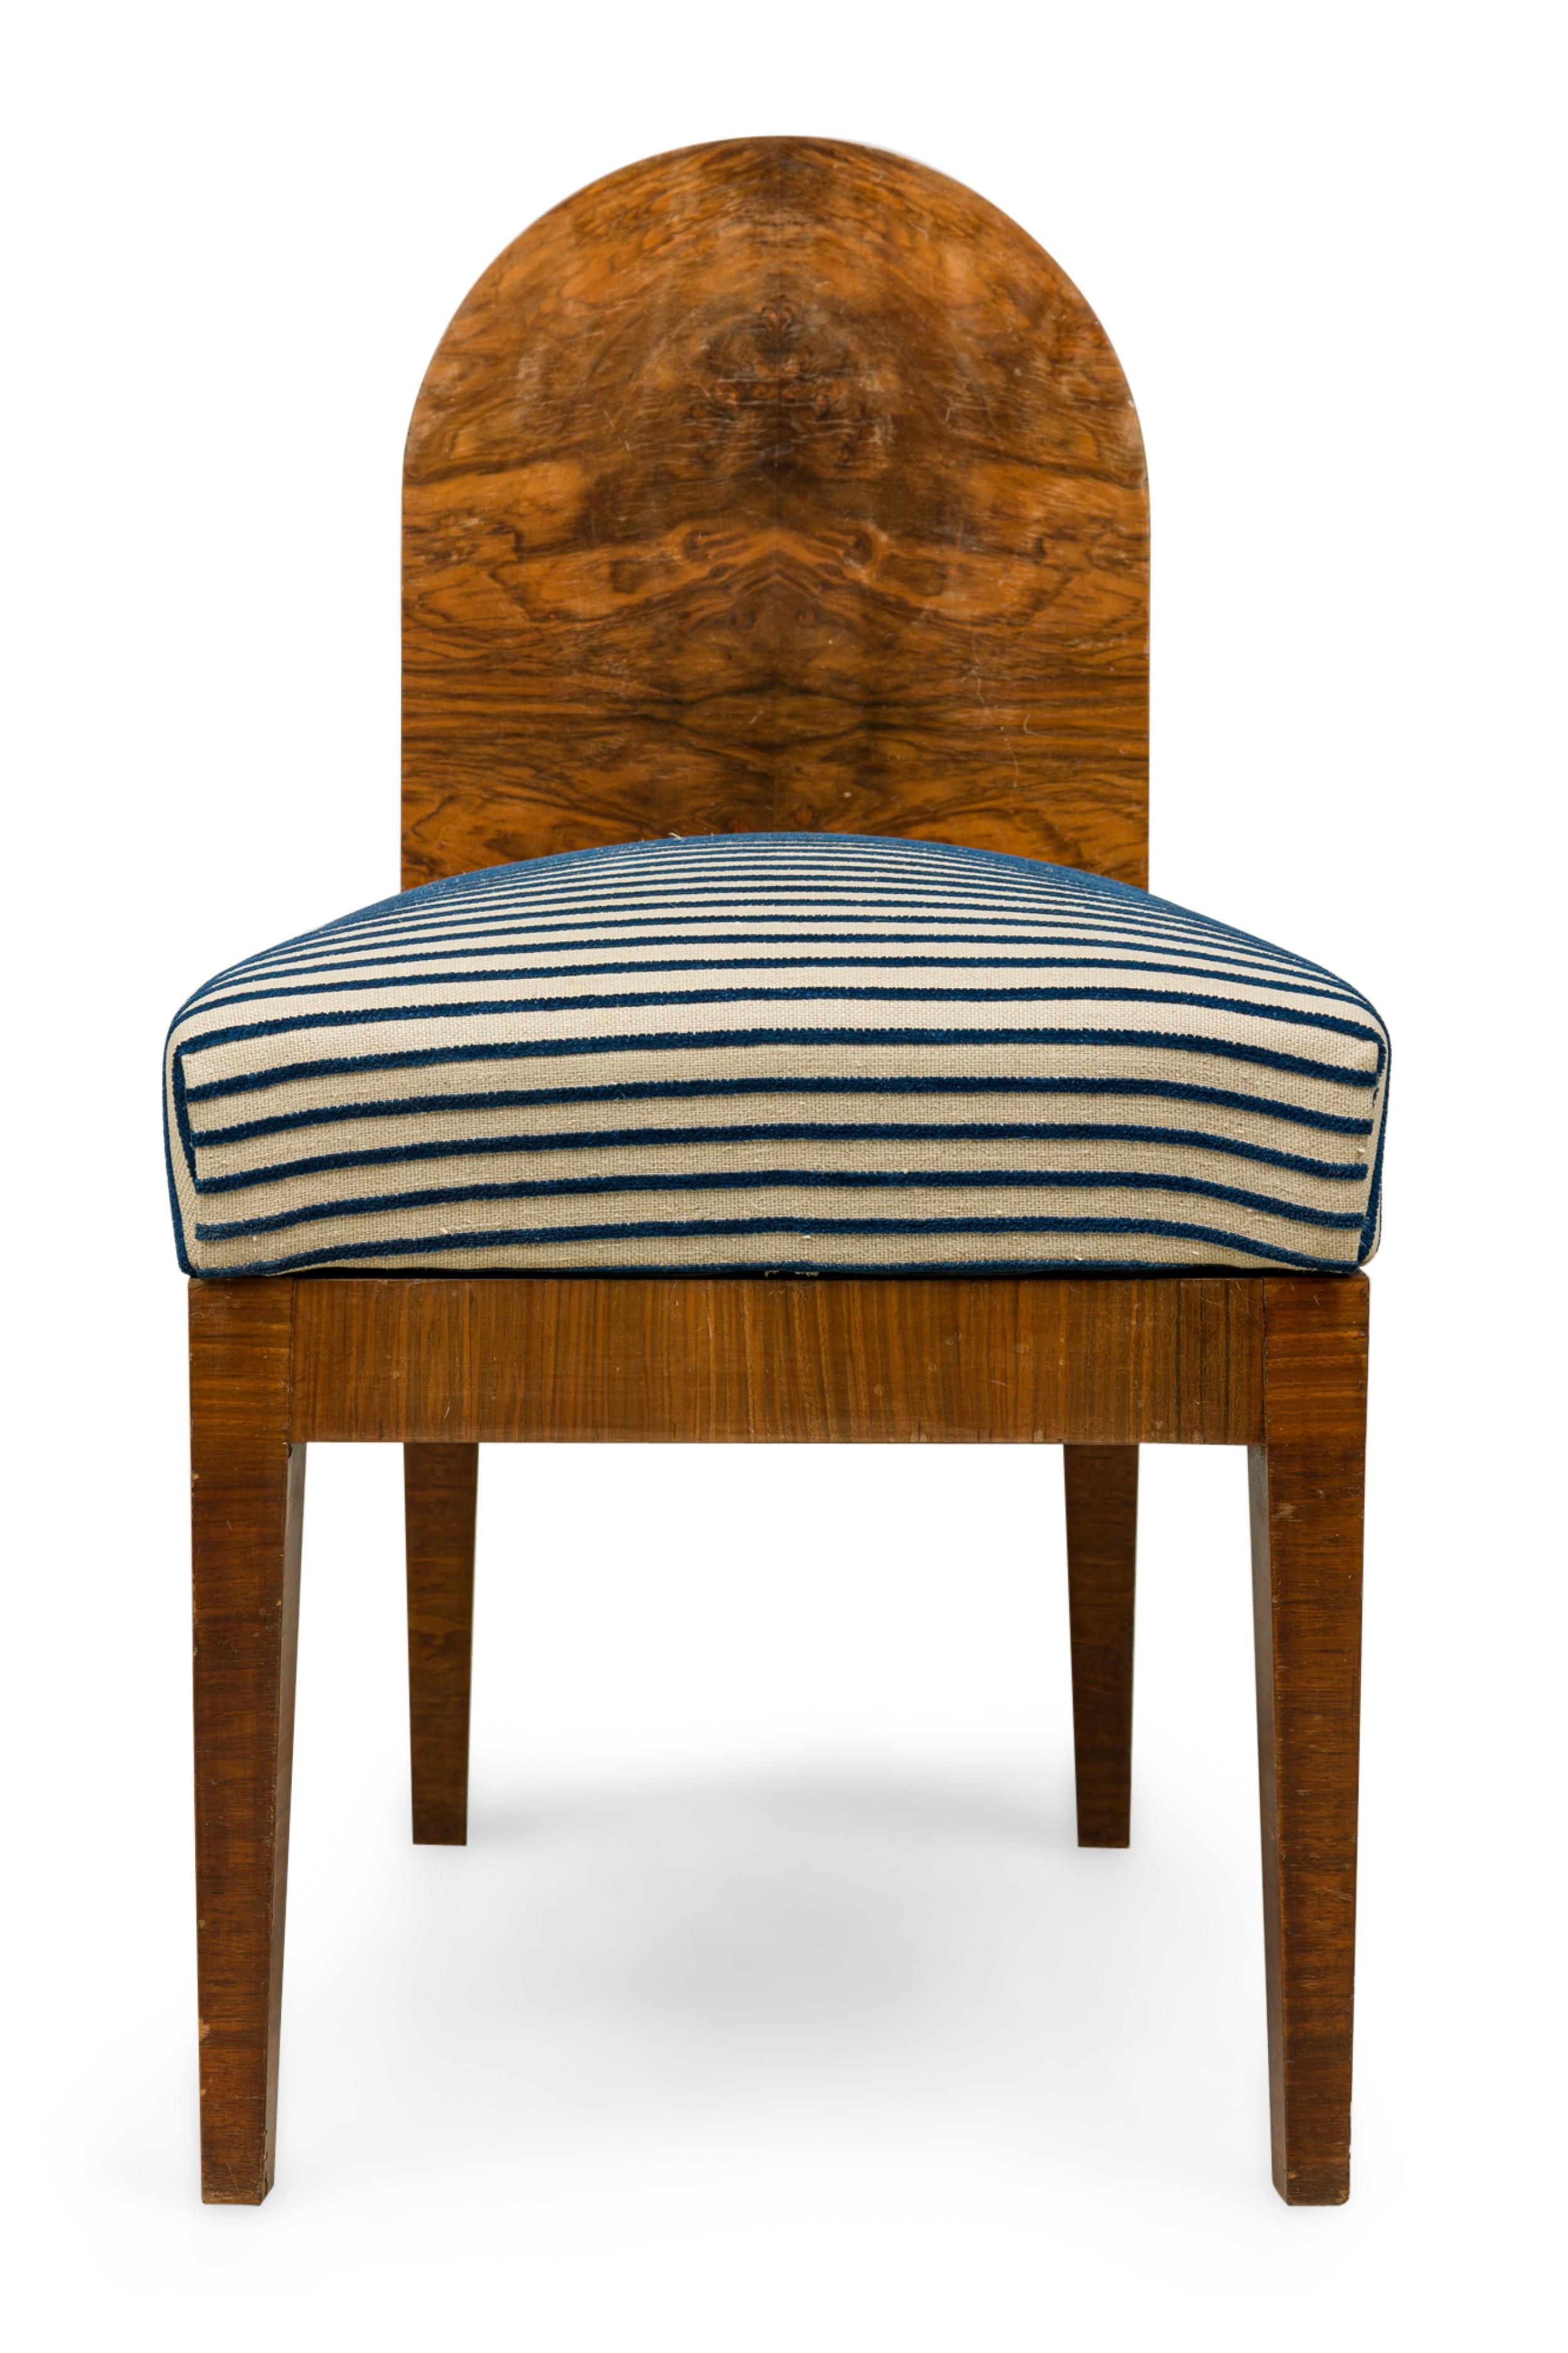 ENSEMBLE de 4 chaises de style Biedermeier autrichien avec dossier en cuillère en placage de ronce et coussins d'assise angulaires recouverts d'un tissu rayé bleu et blanc. (PRIX DE L'ENSEMBLE)
 

 Usure mineure de la finition
